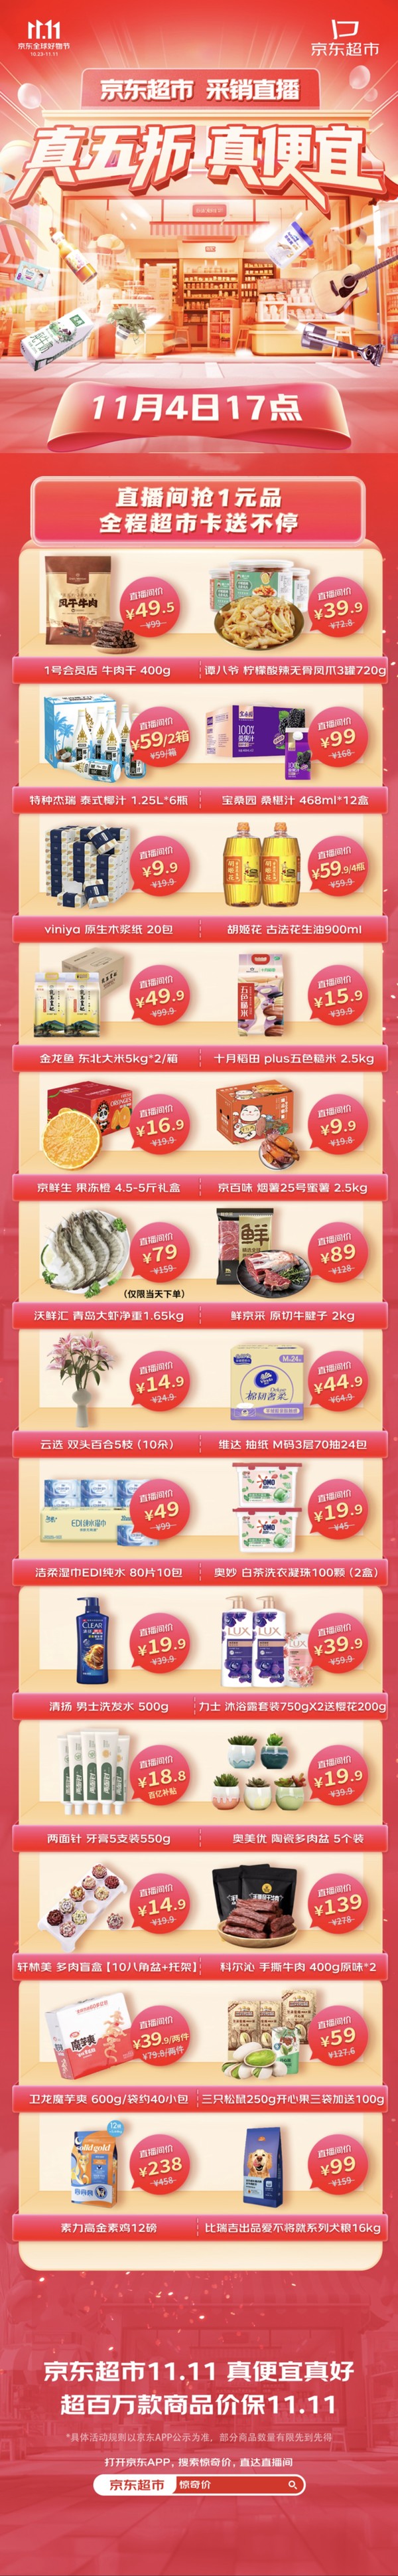 促销活动：京东超市 11.11全球好物节 真五折真便宜 采销官方直播间